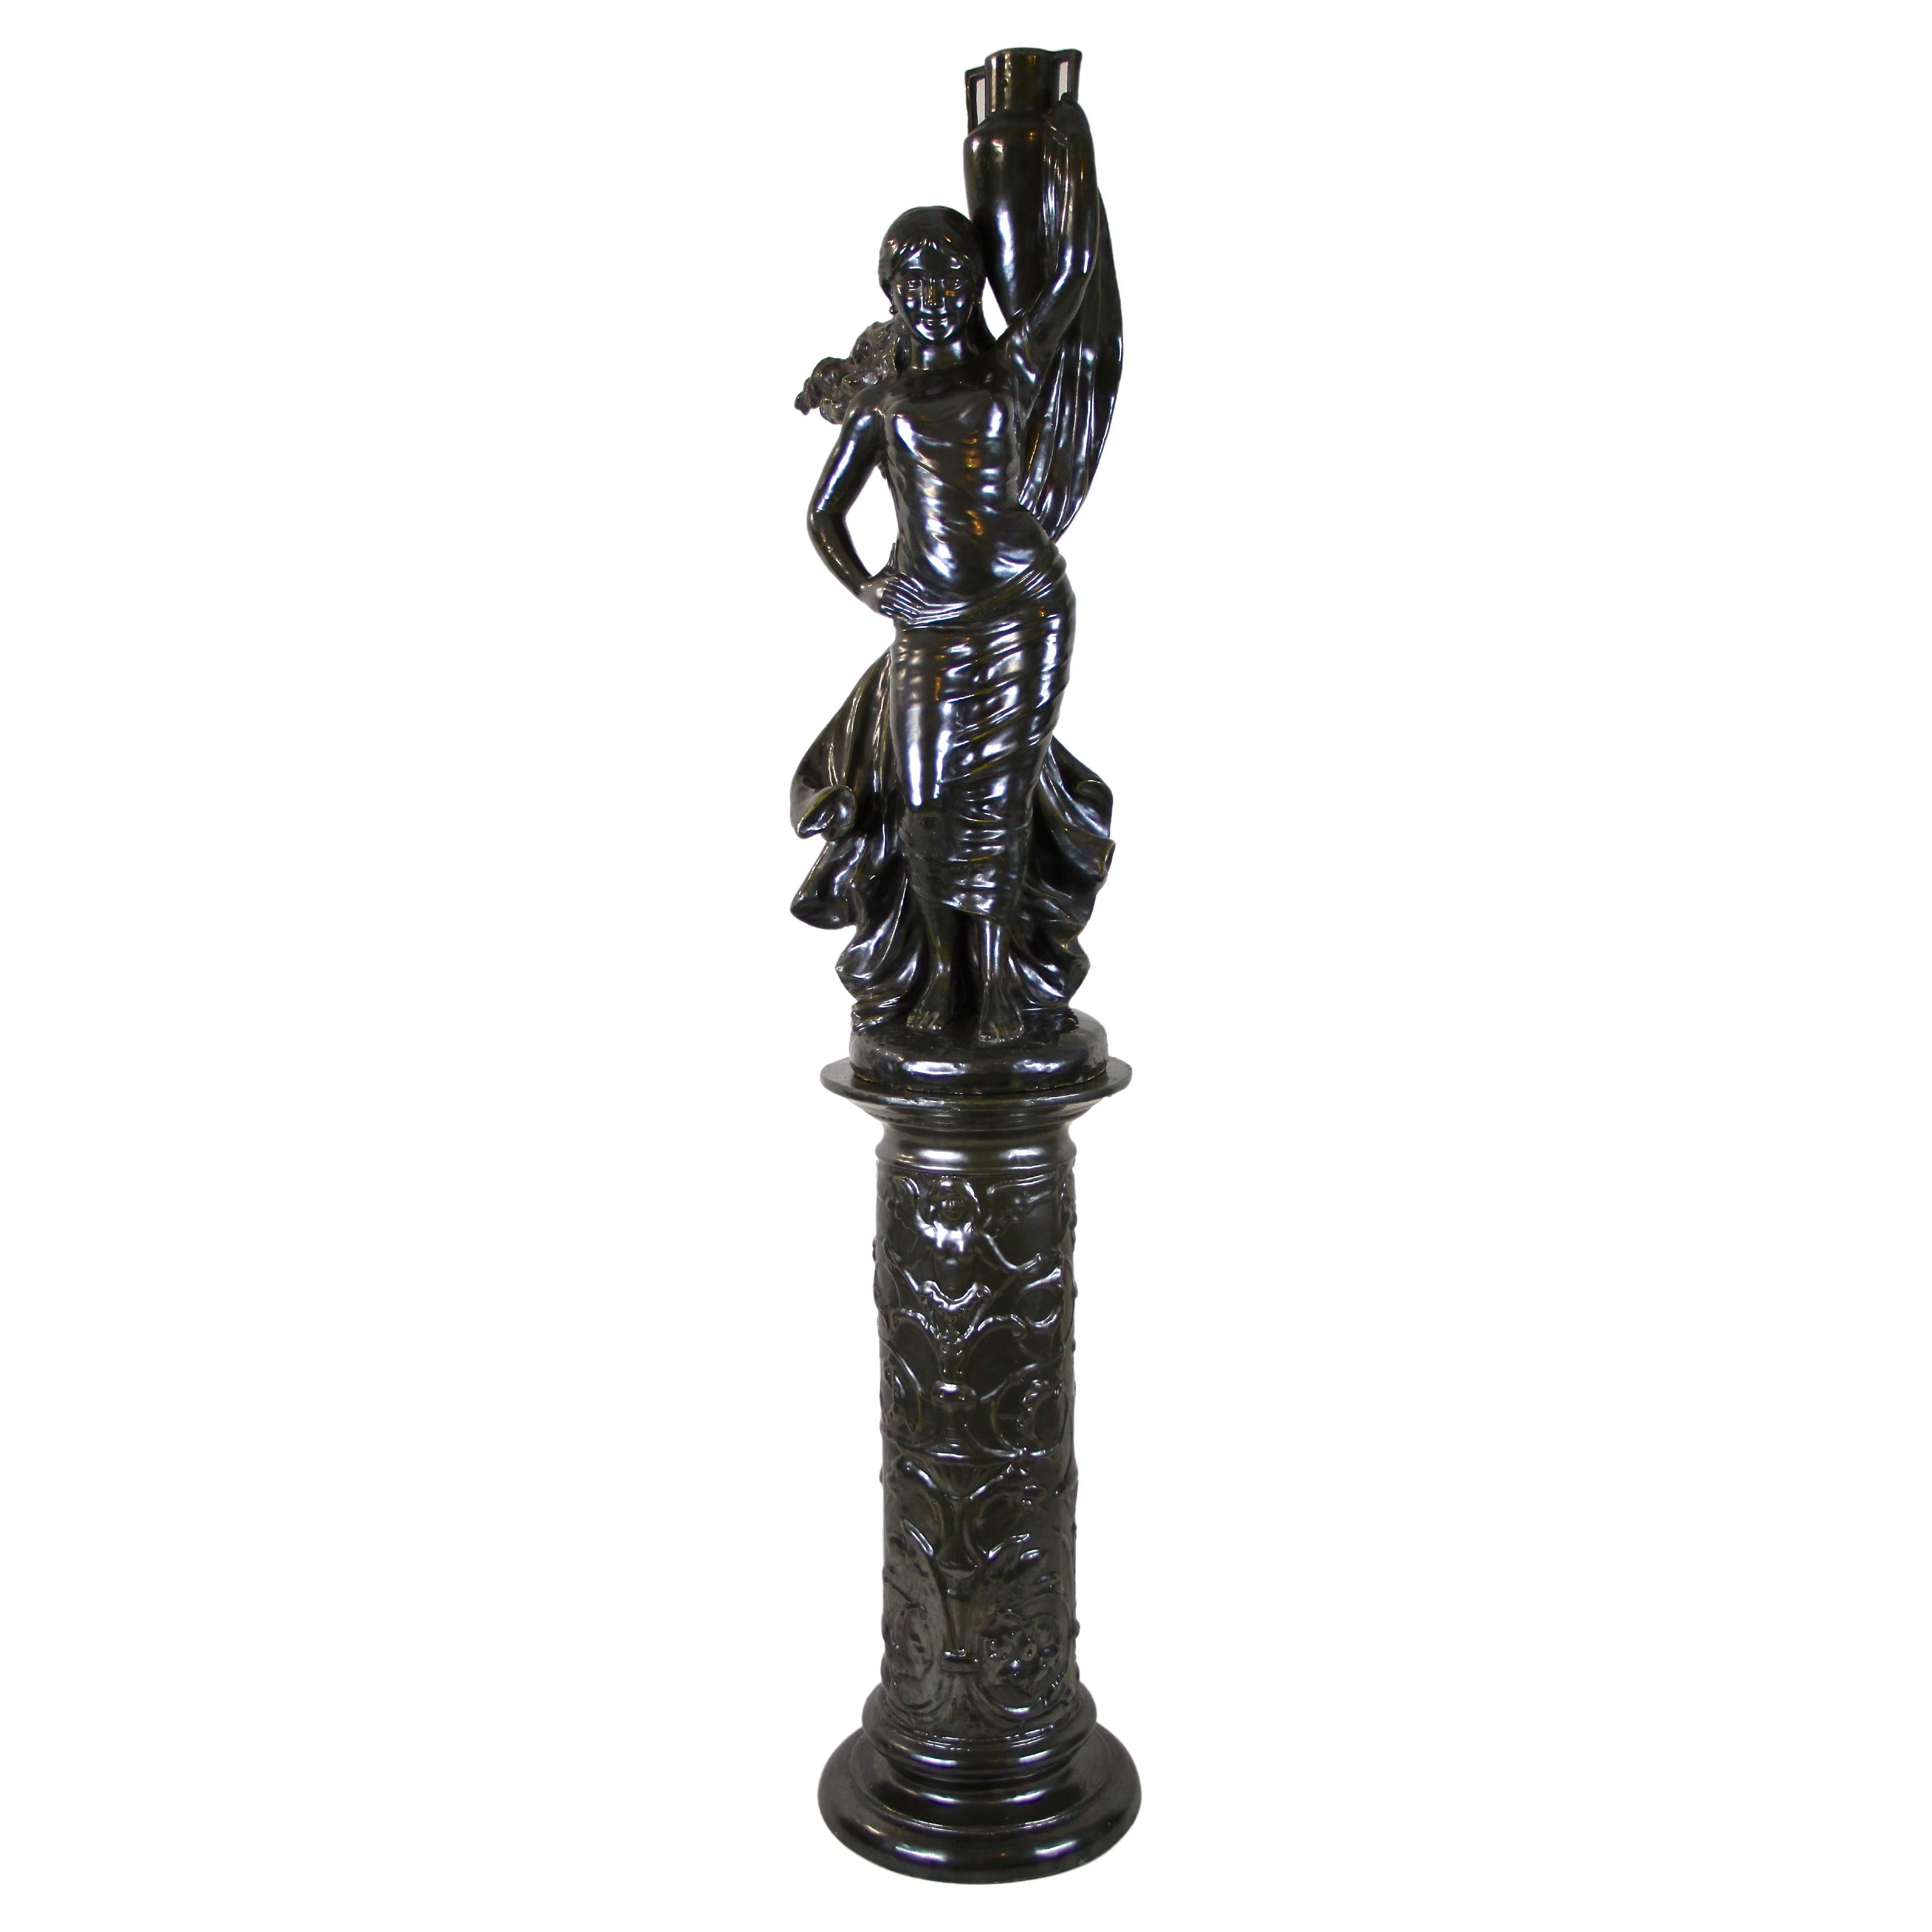 Figurative Art Nouveau Ceramic Statue on Column, Bronze Look, France, circa 1900